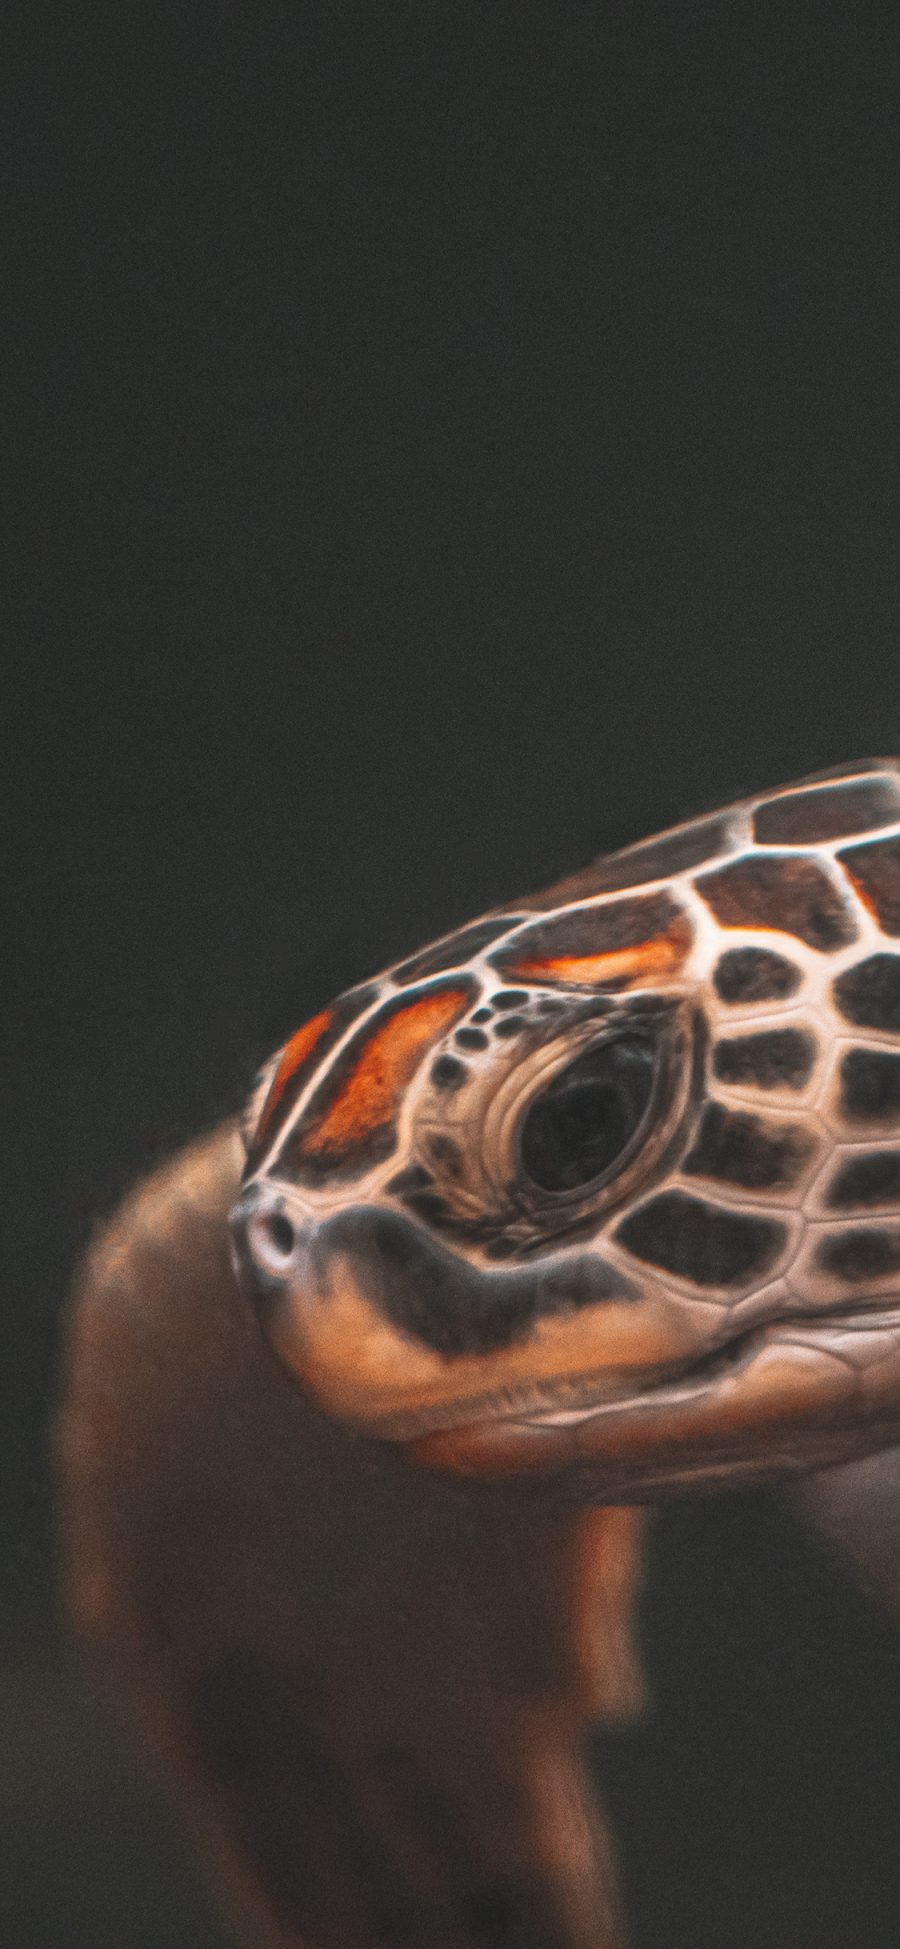 [2436×1125]海龟 乌龟 游动 纹理 苹果手机壁纸图片